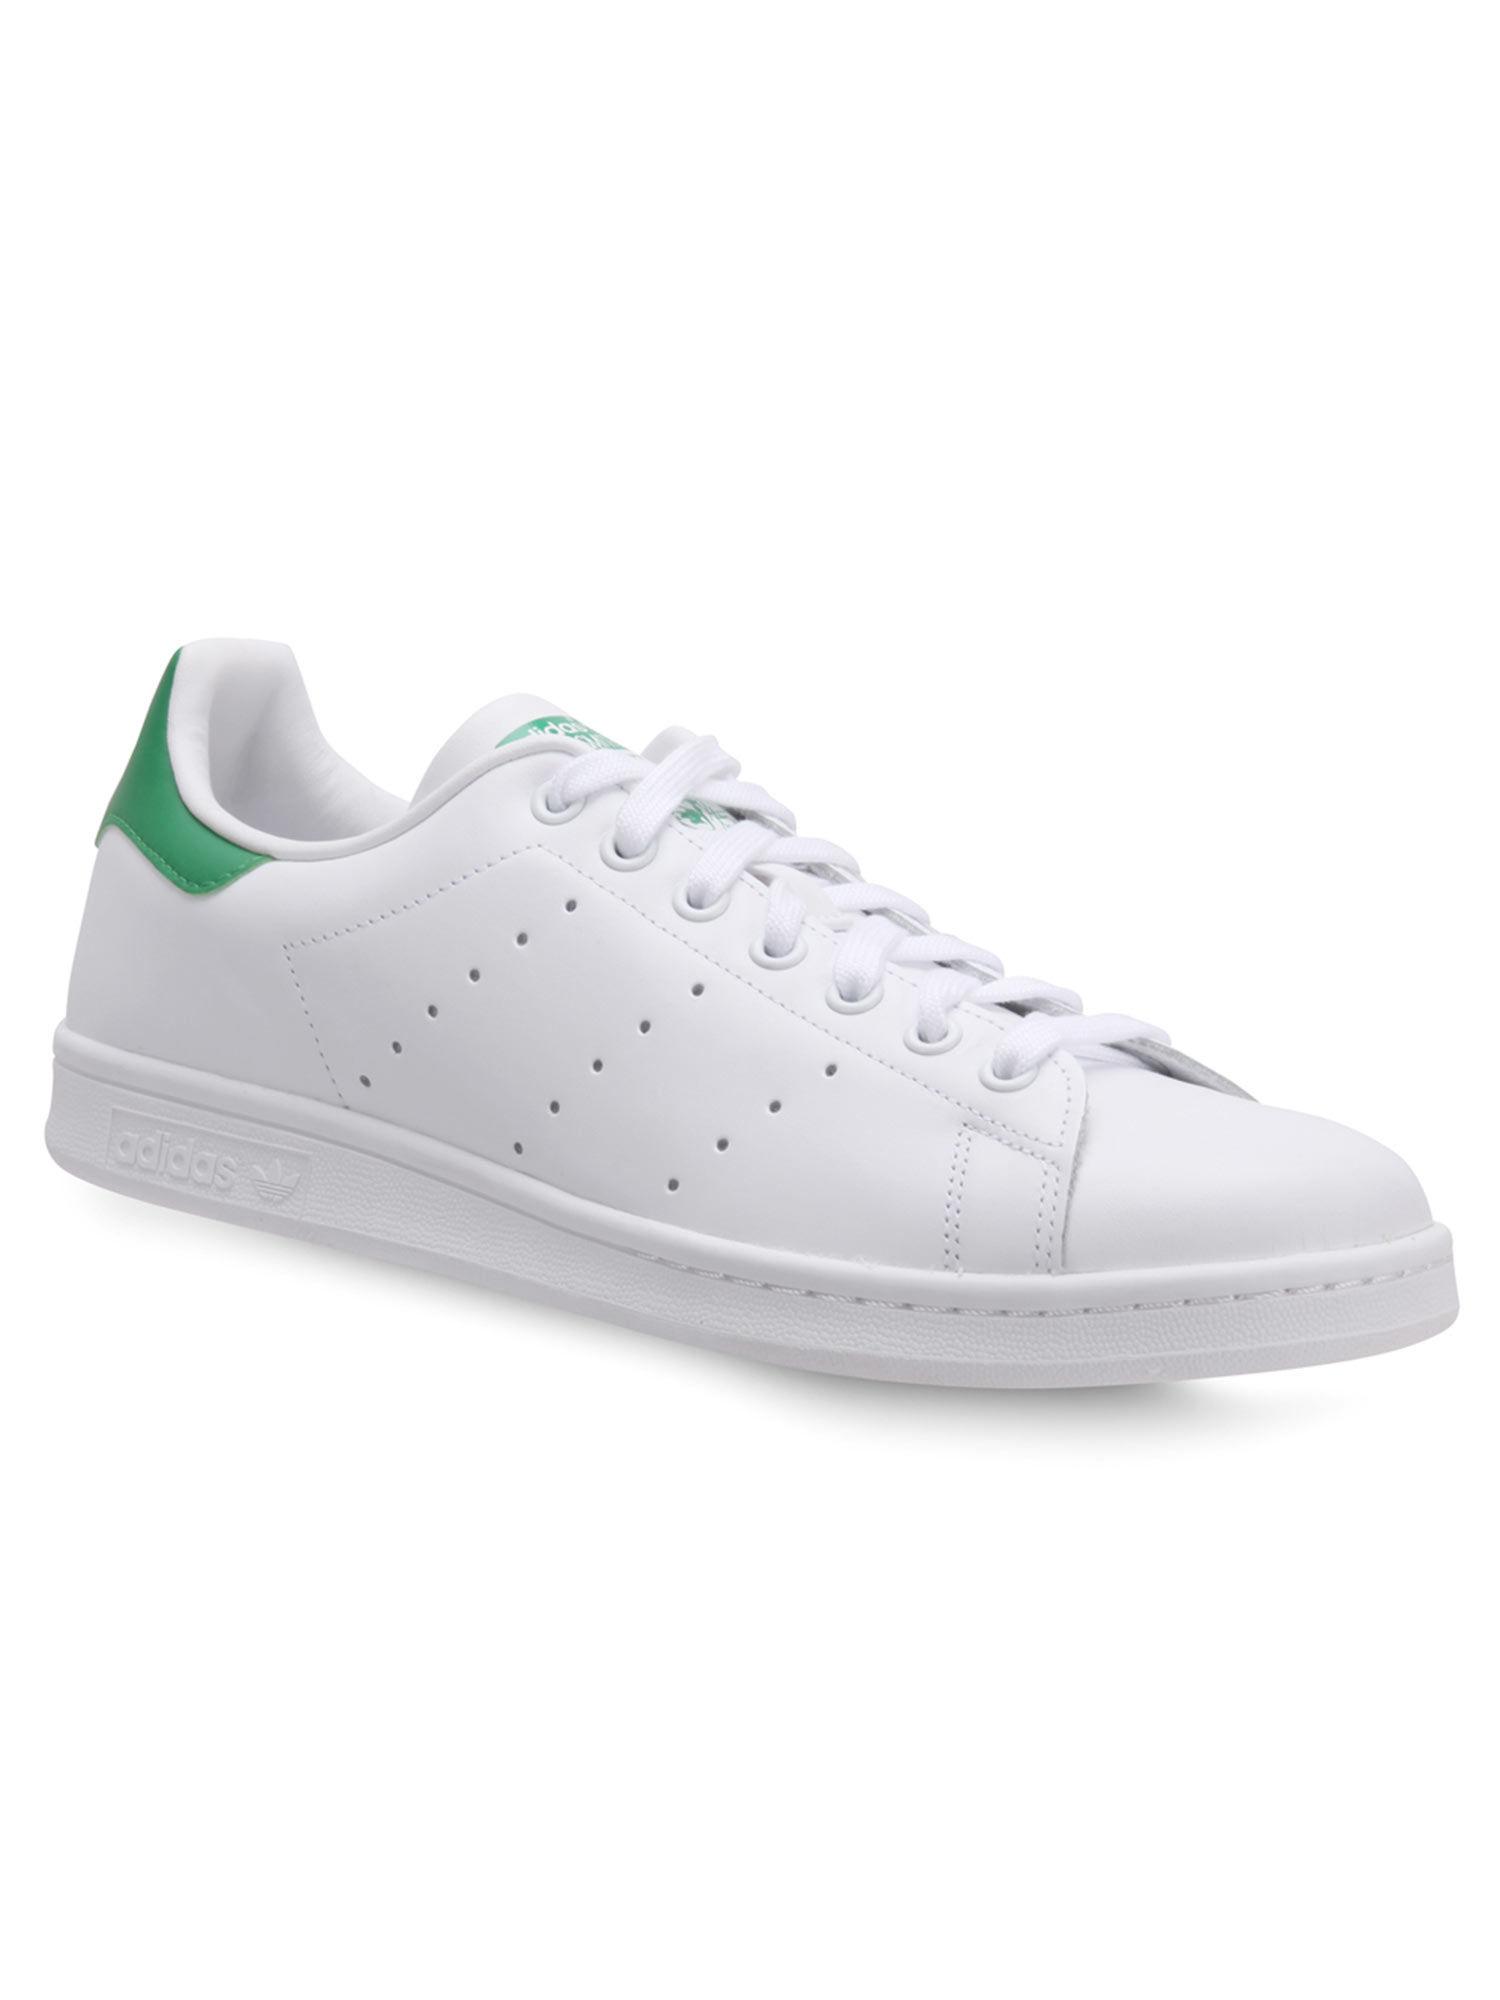 stan smith white sneakers (uk 3.5)